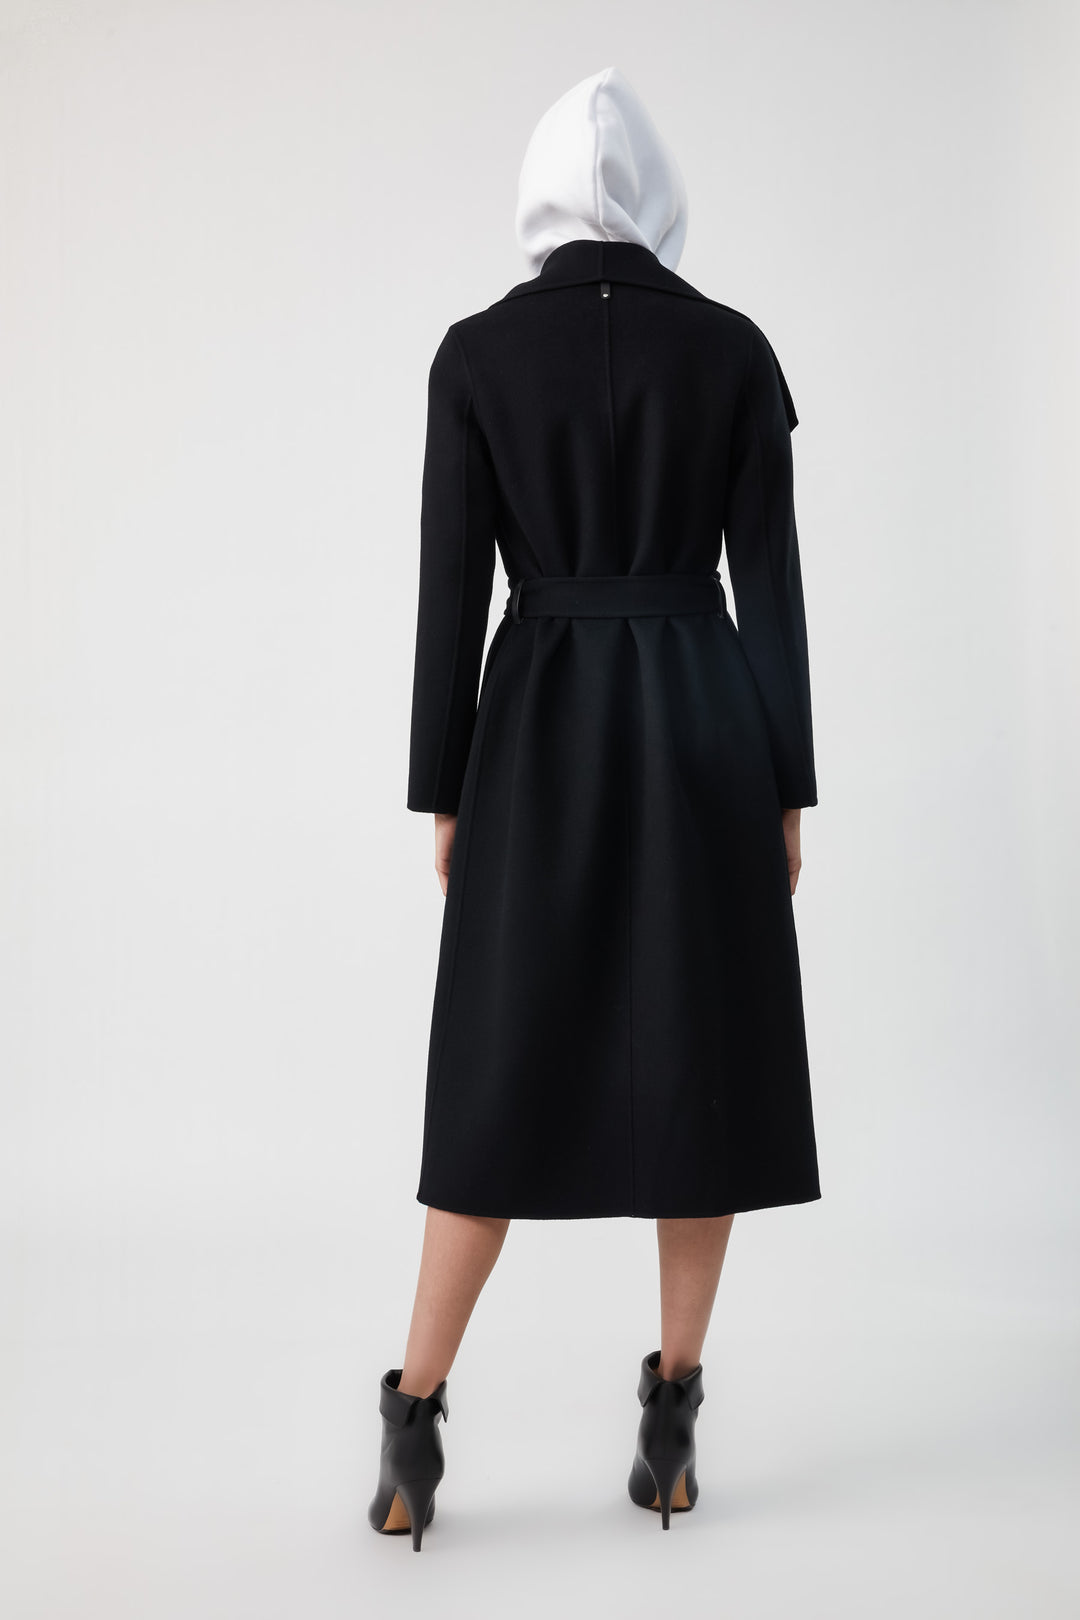 MACKAGE - Mai Wool Coat in Black